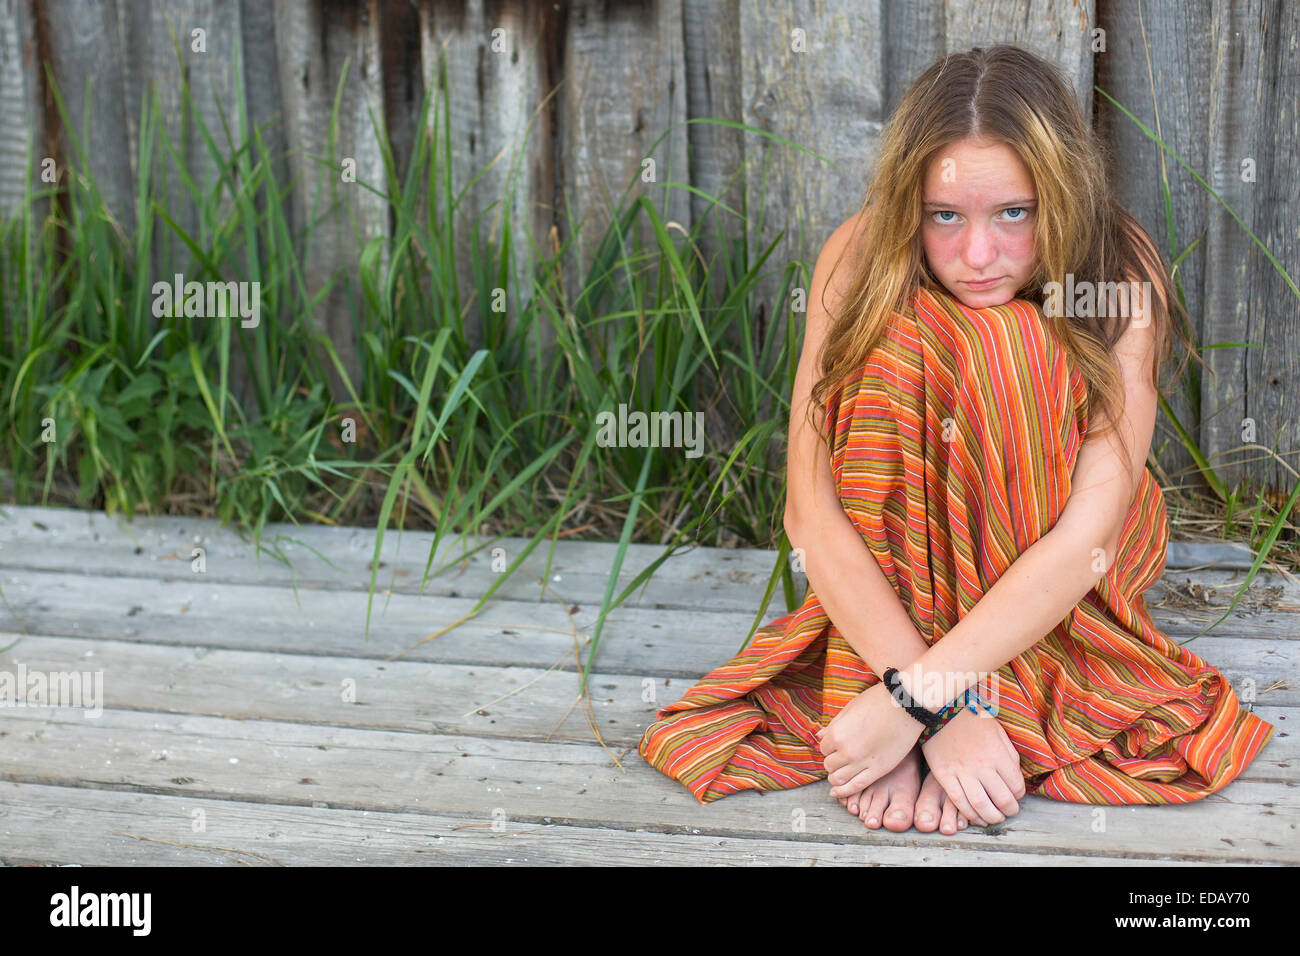 Giovani hippie ragazza seduta sul terreno all'esterno. Immagine con spazio per il testo. Foto Stock